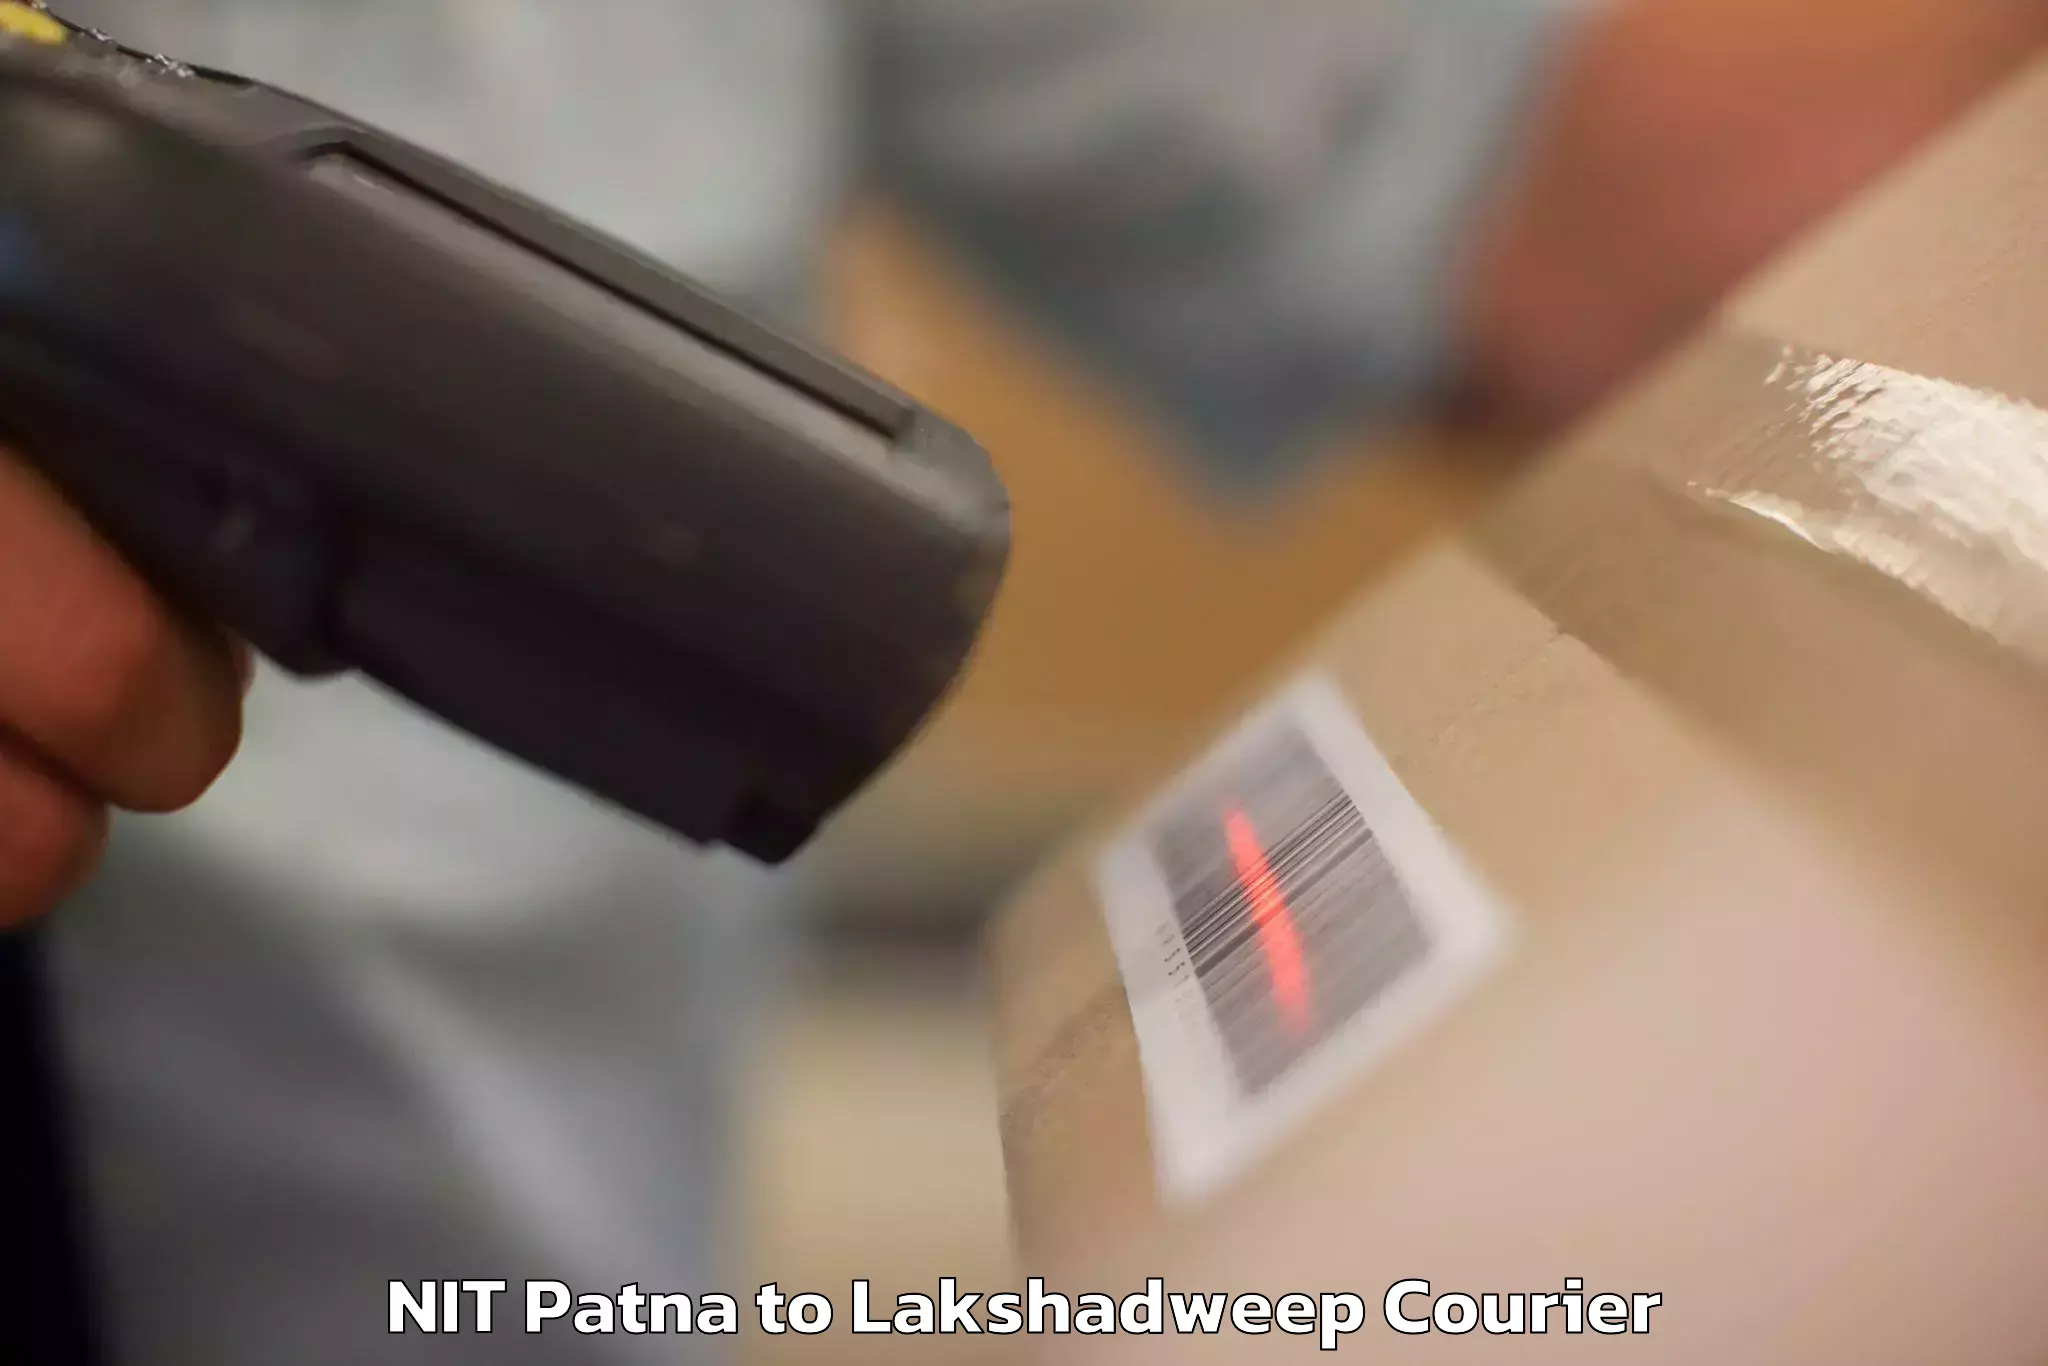 Luggage transit service NIT Patna to Lakshadweep